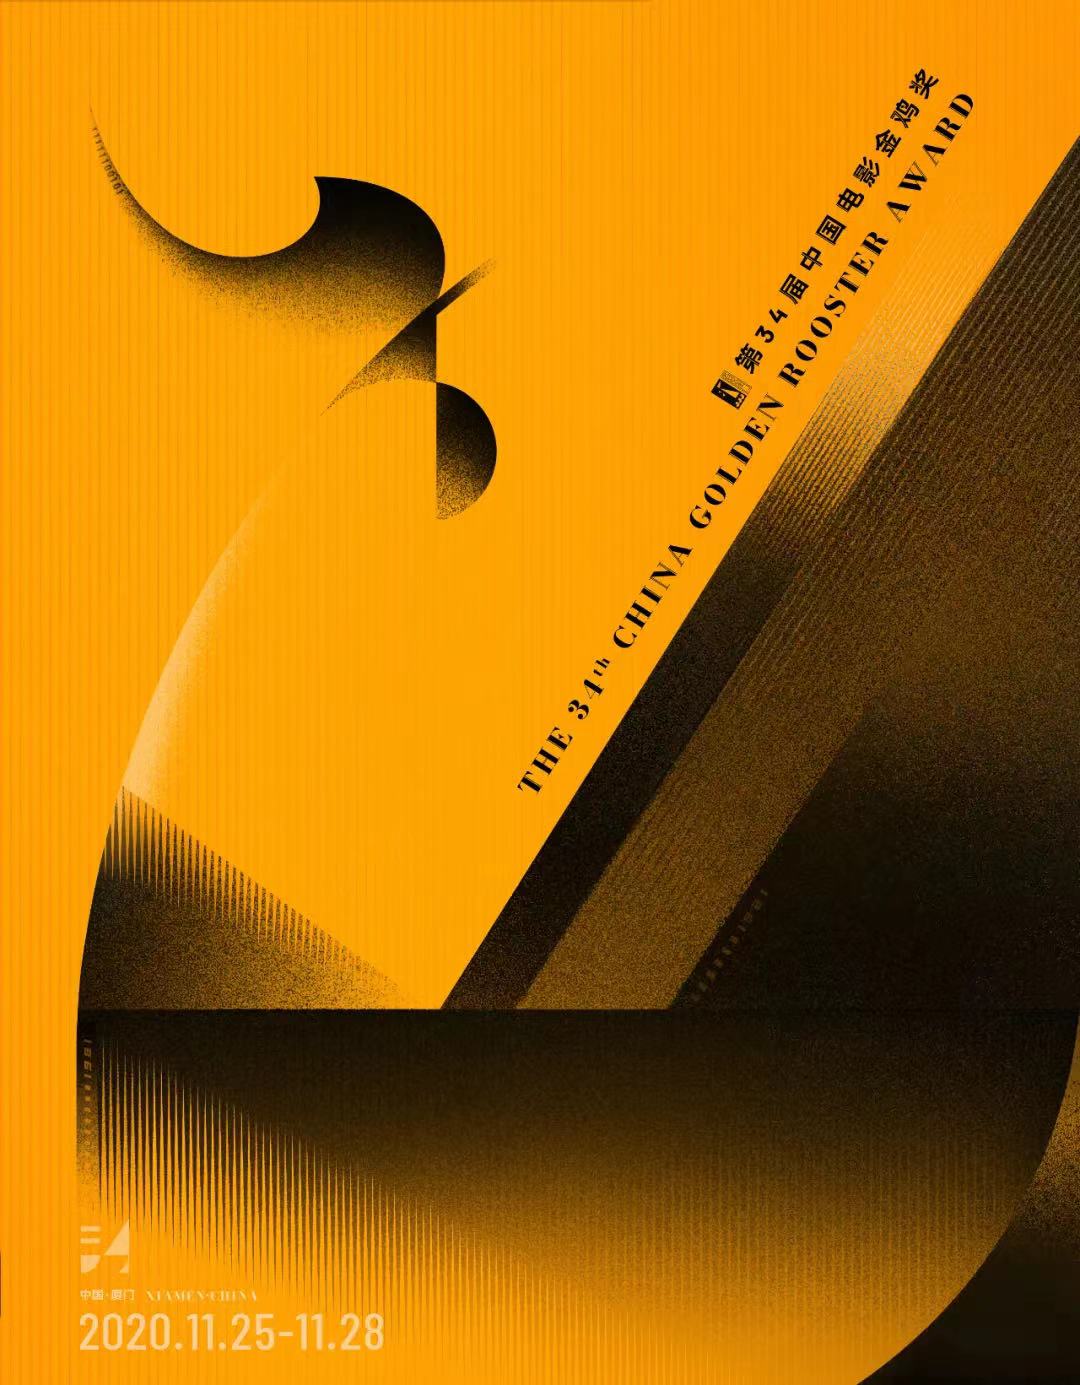 《雄雞凝視》等作品入圍第34屆中國電影金雞獎海報設計大賽-圖8